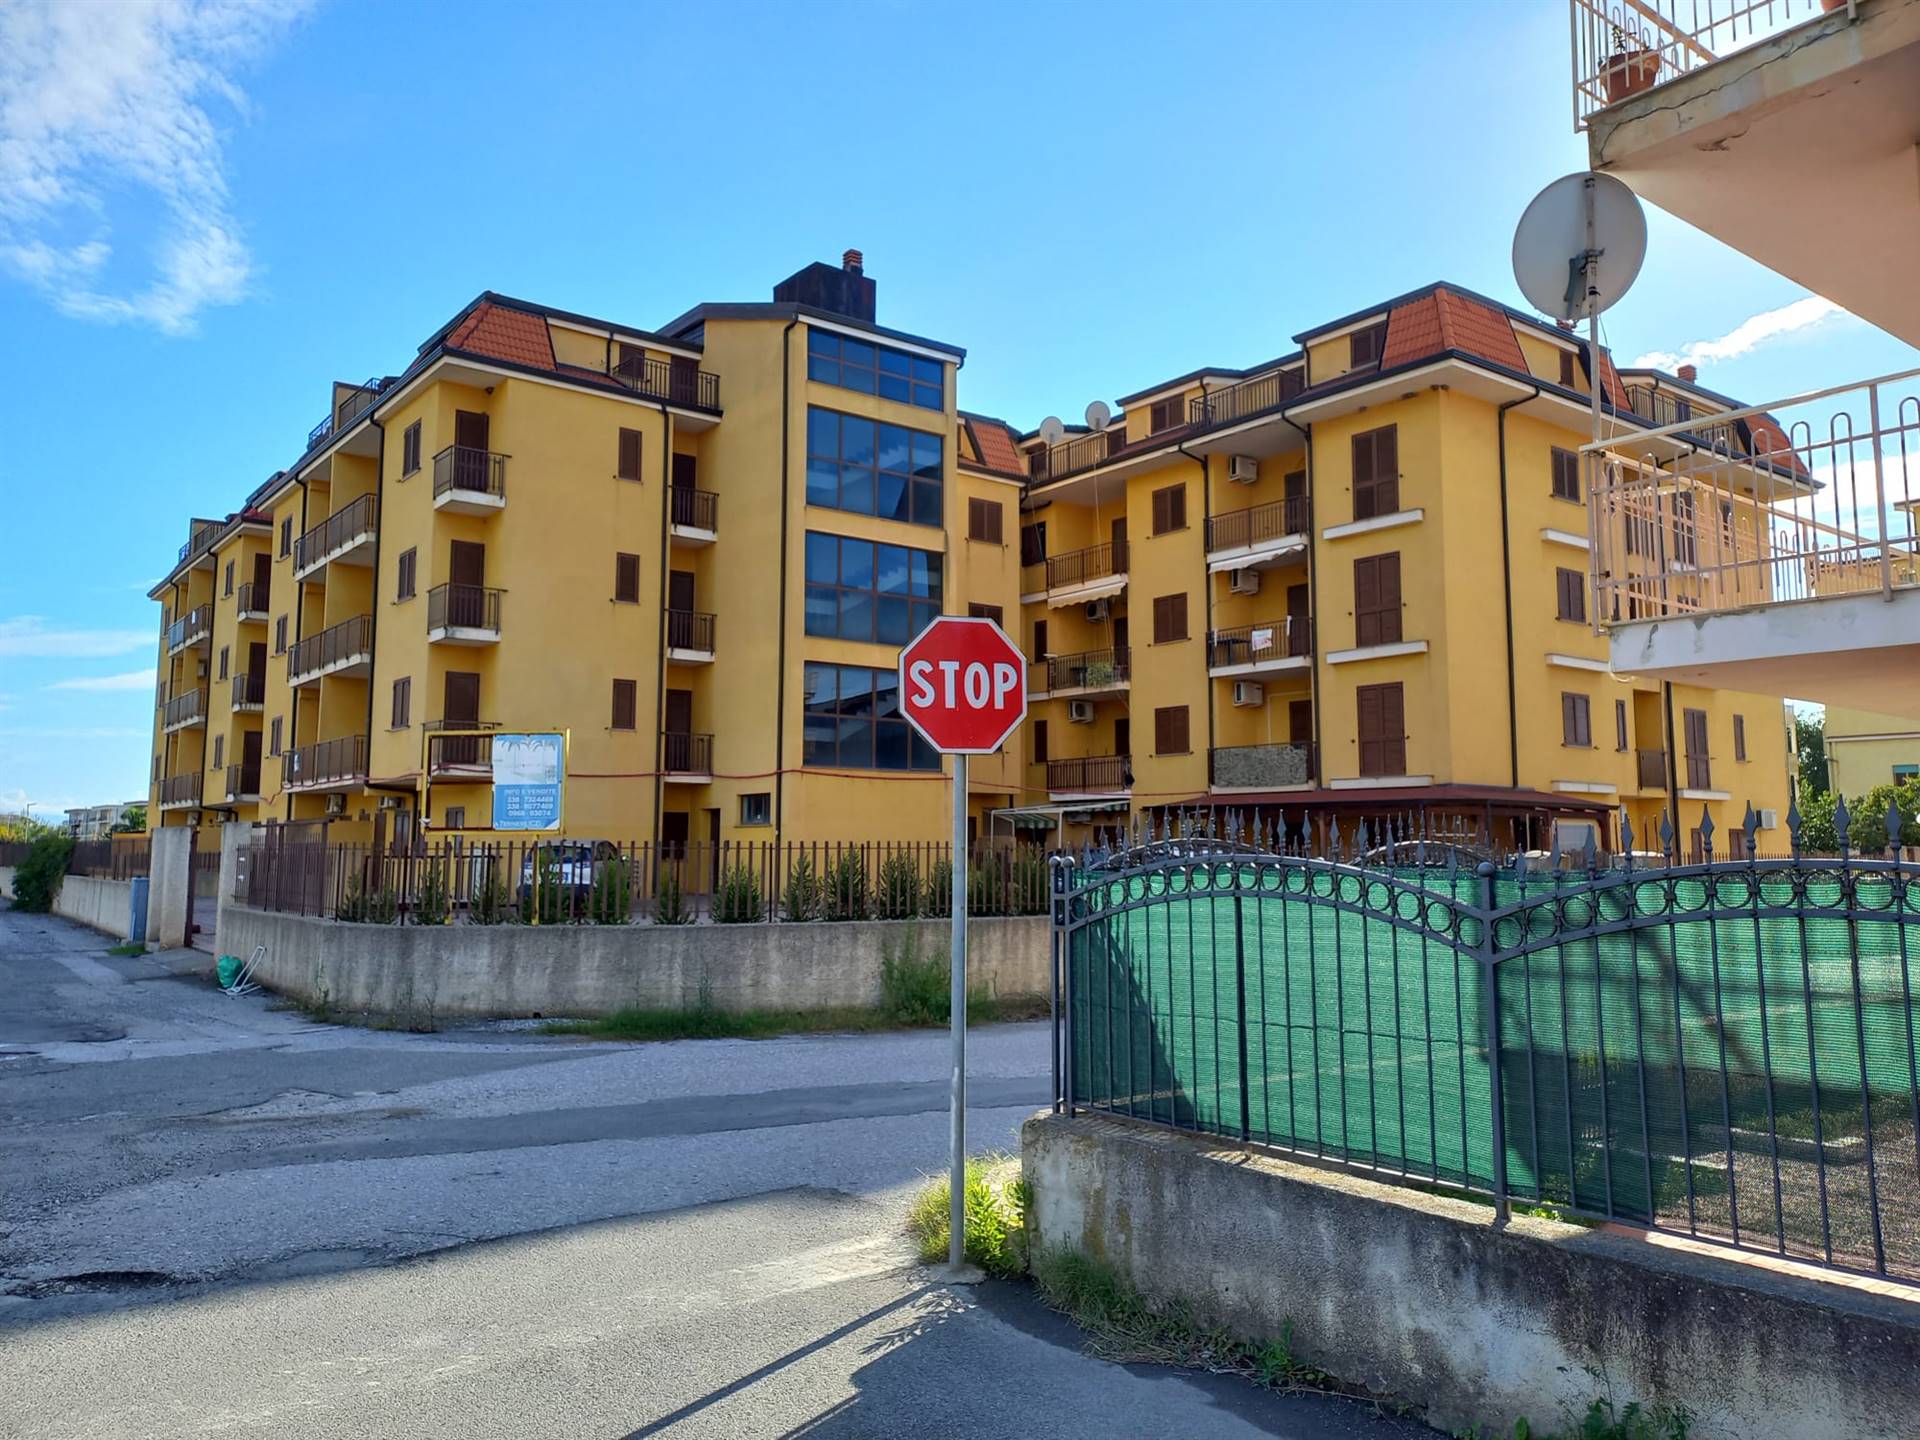 Appartamento in vendita a Nocera Terinese, 2 locali, zona Località: MARINA DI NOCERA TERINESE, prezzo € 67.000 | CambioCasa.it